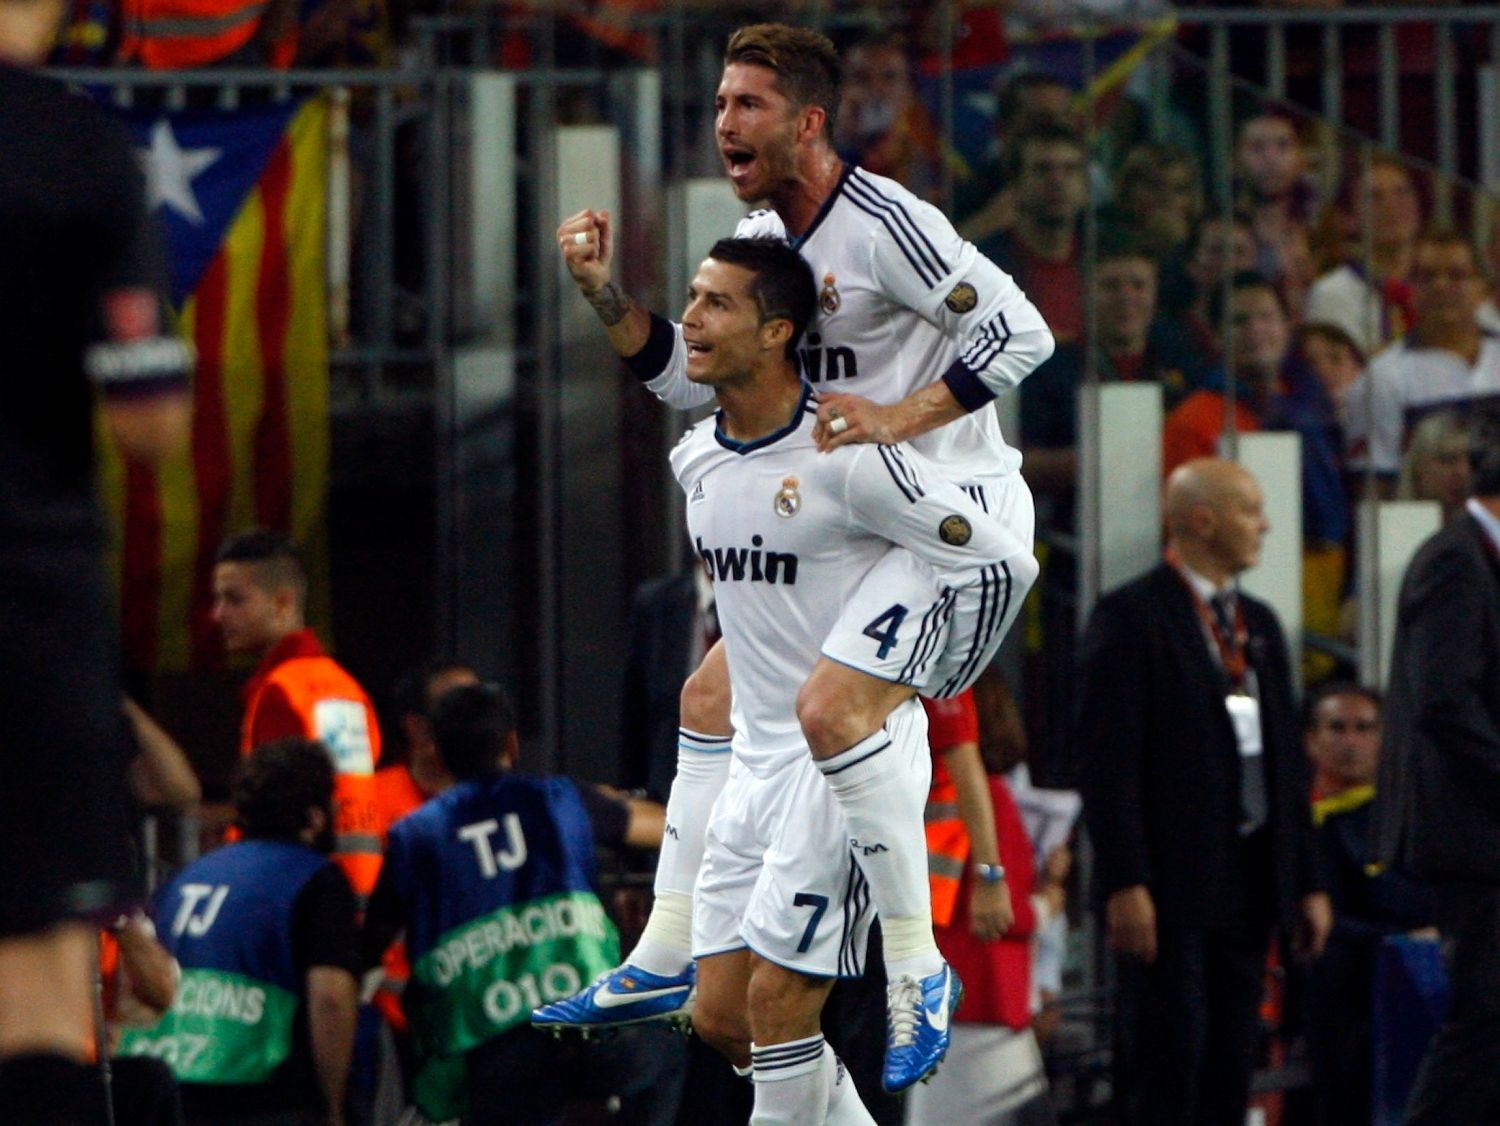 Fotbalisté Realu Madrid Cristiano Ronaldo a Sergio Ramos (na koni) slaví gól v utkání Primera División 2012/13 proti Barceloně.